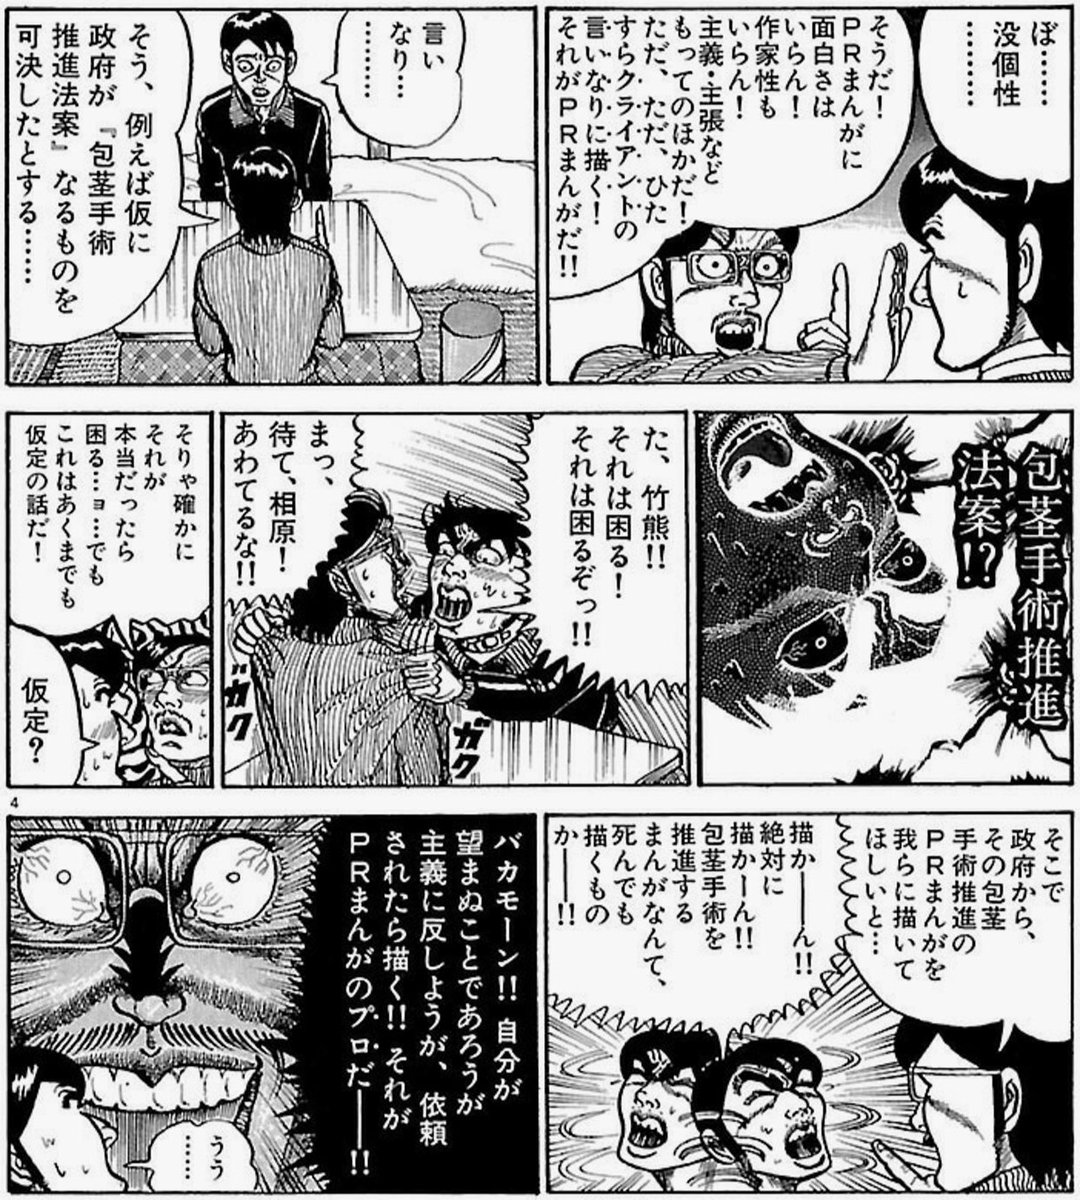 中野 Pisiinu さんの漫画 1346作目 ツイコミ 仮